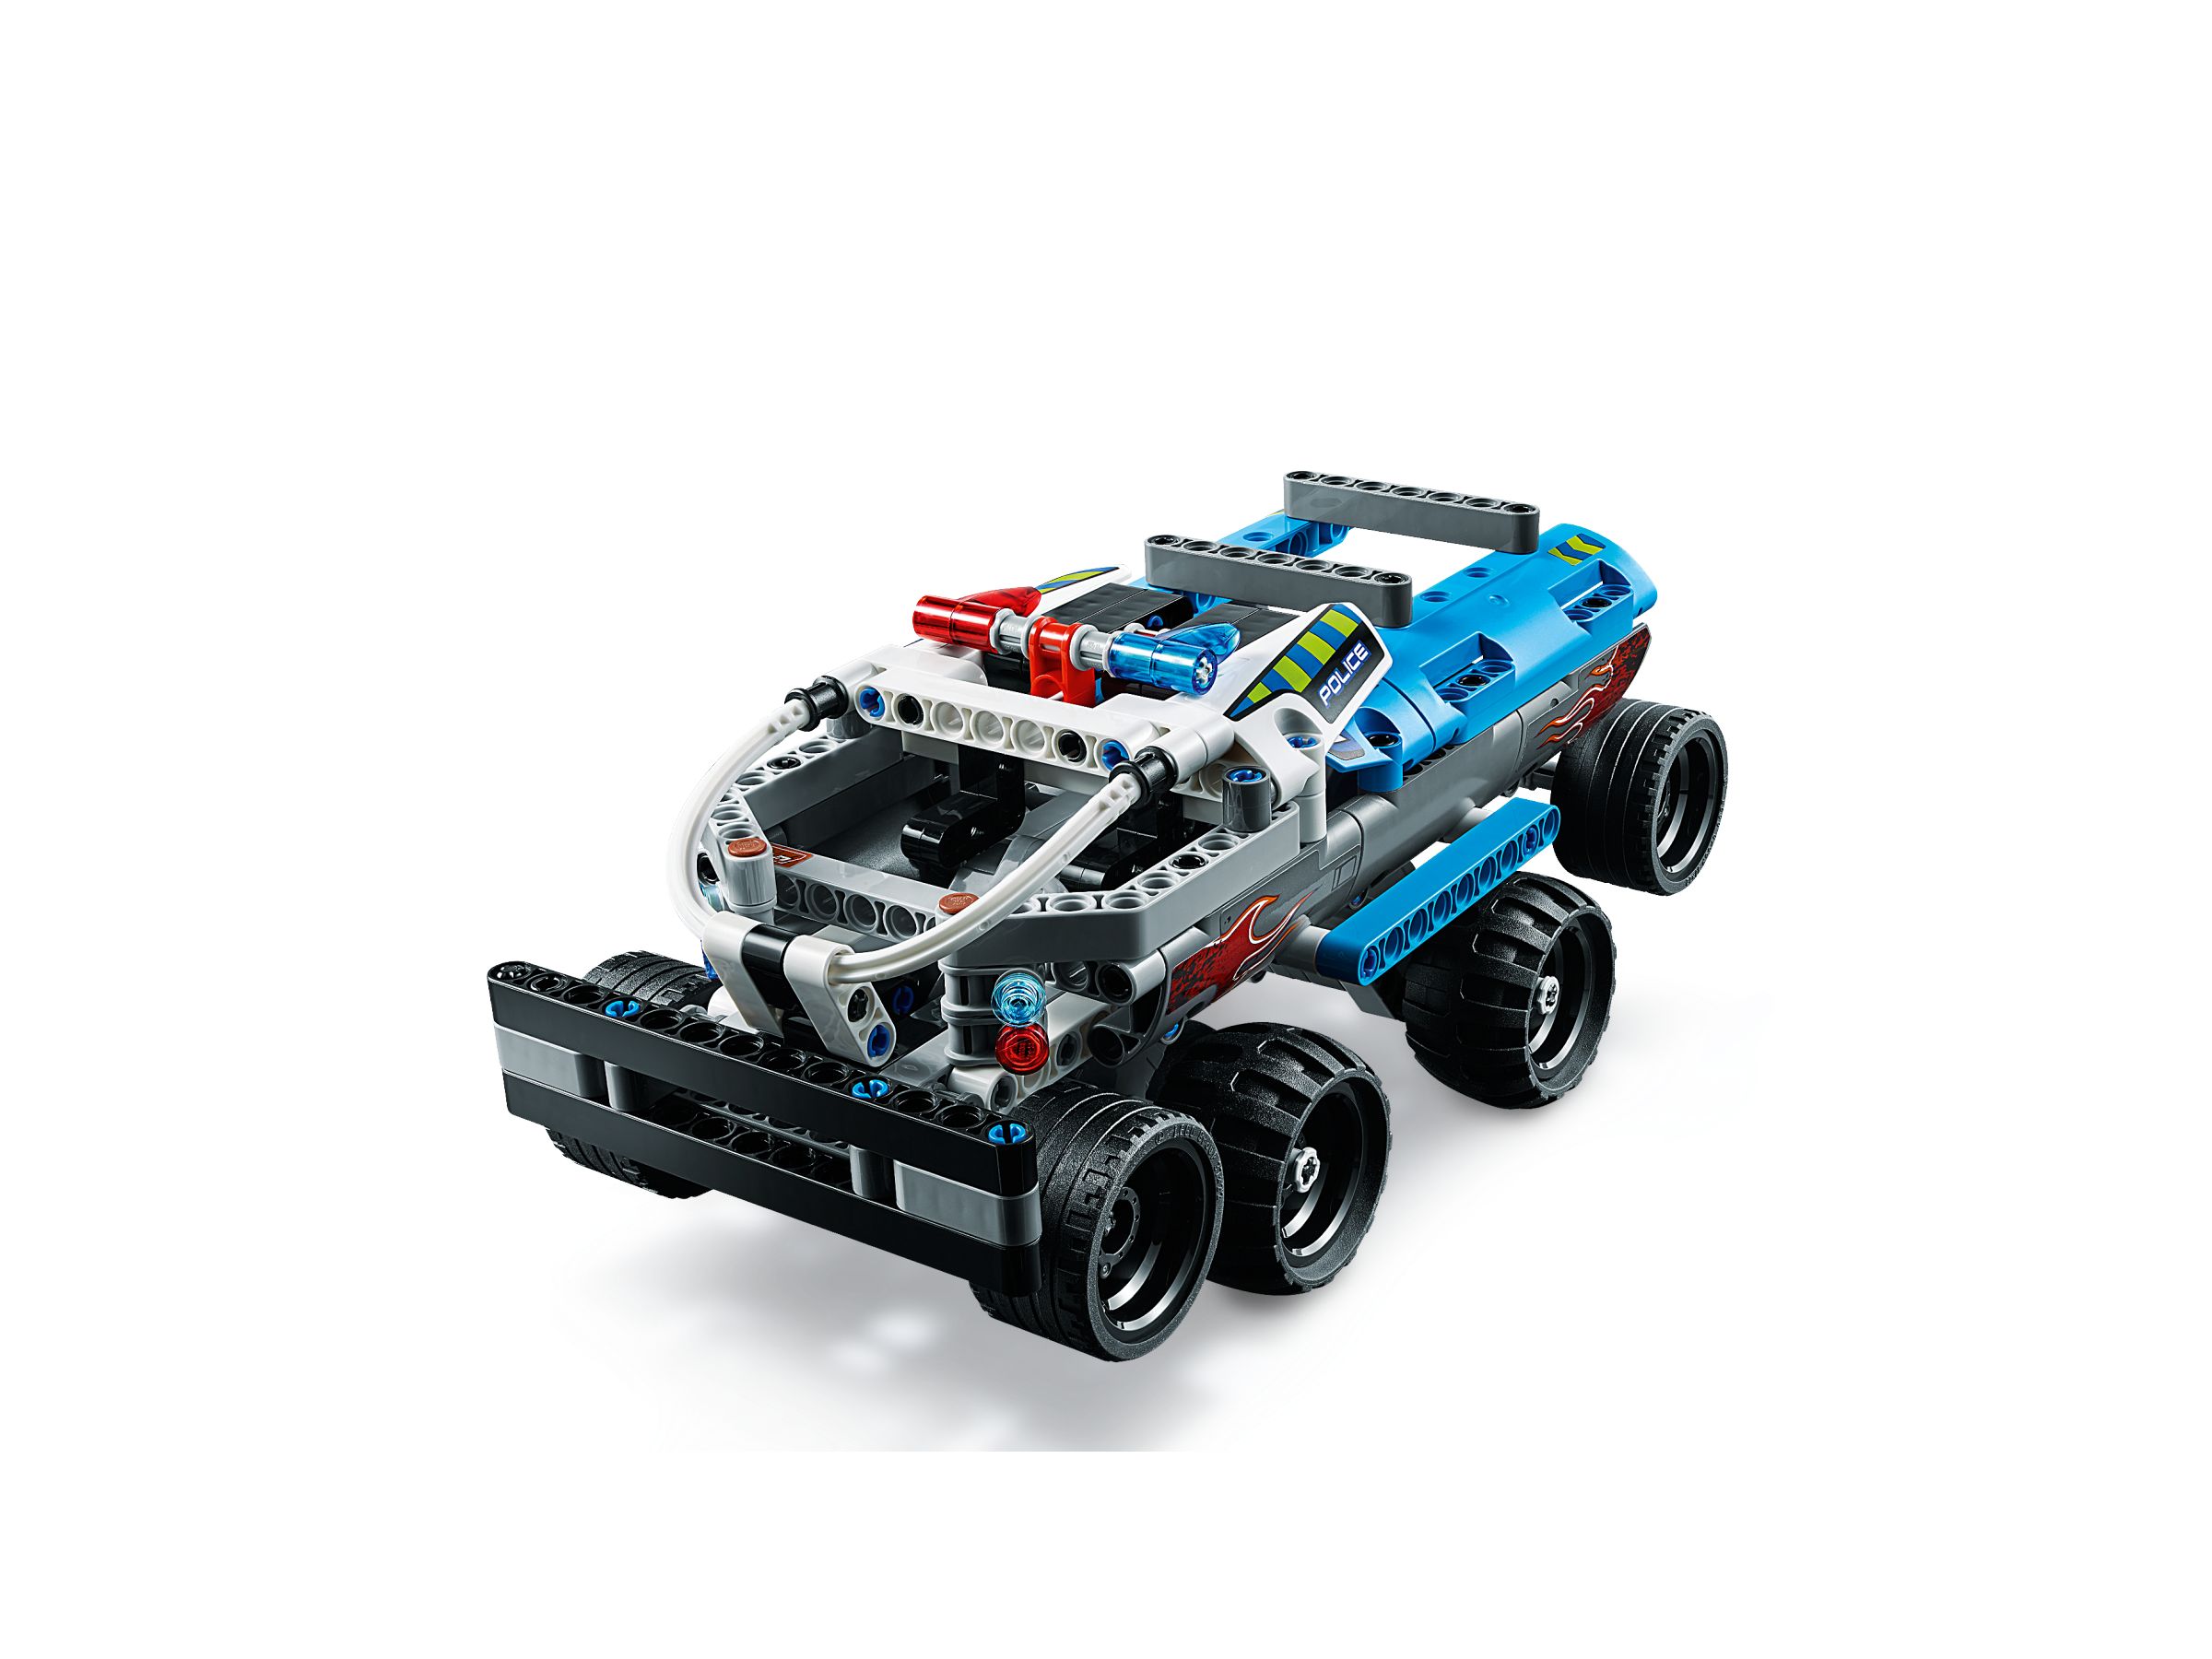 LEGO Technic 42090 Fluchtfahrzeug LEGO_42090_alt3.jpg